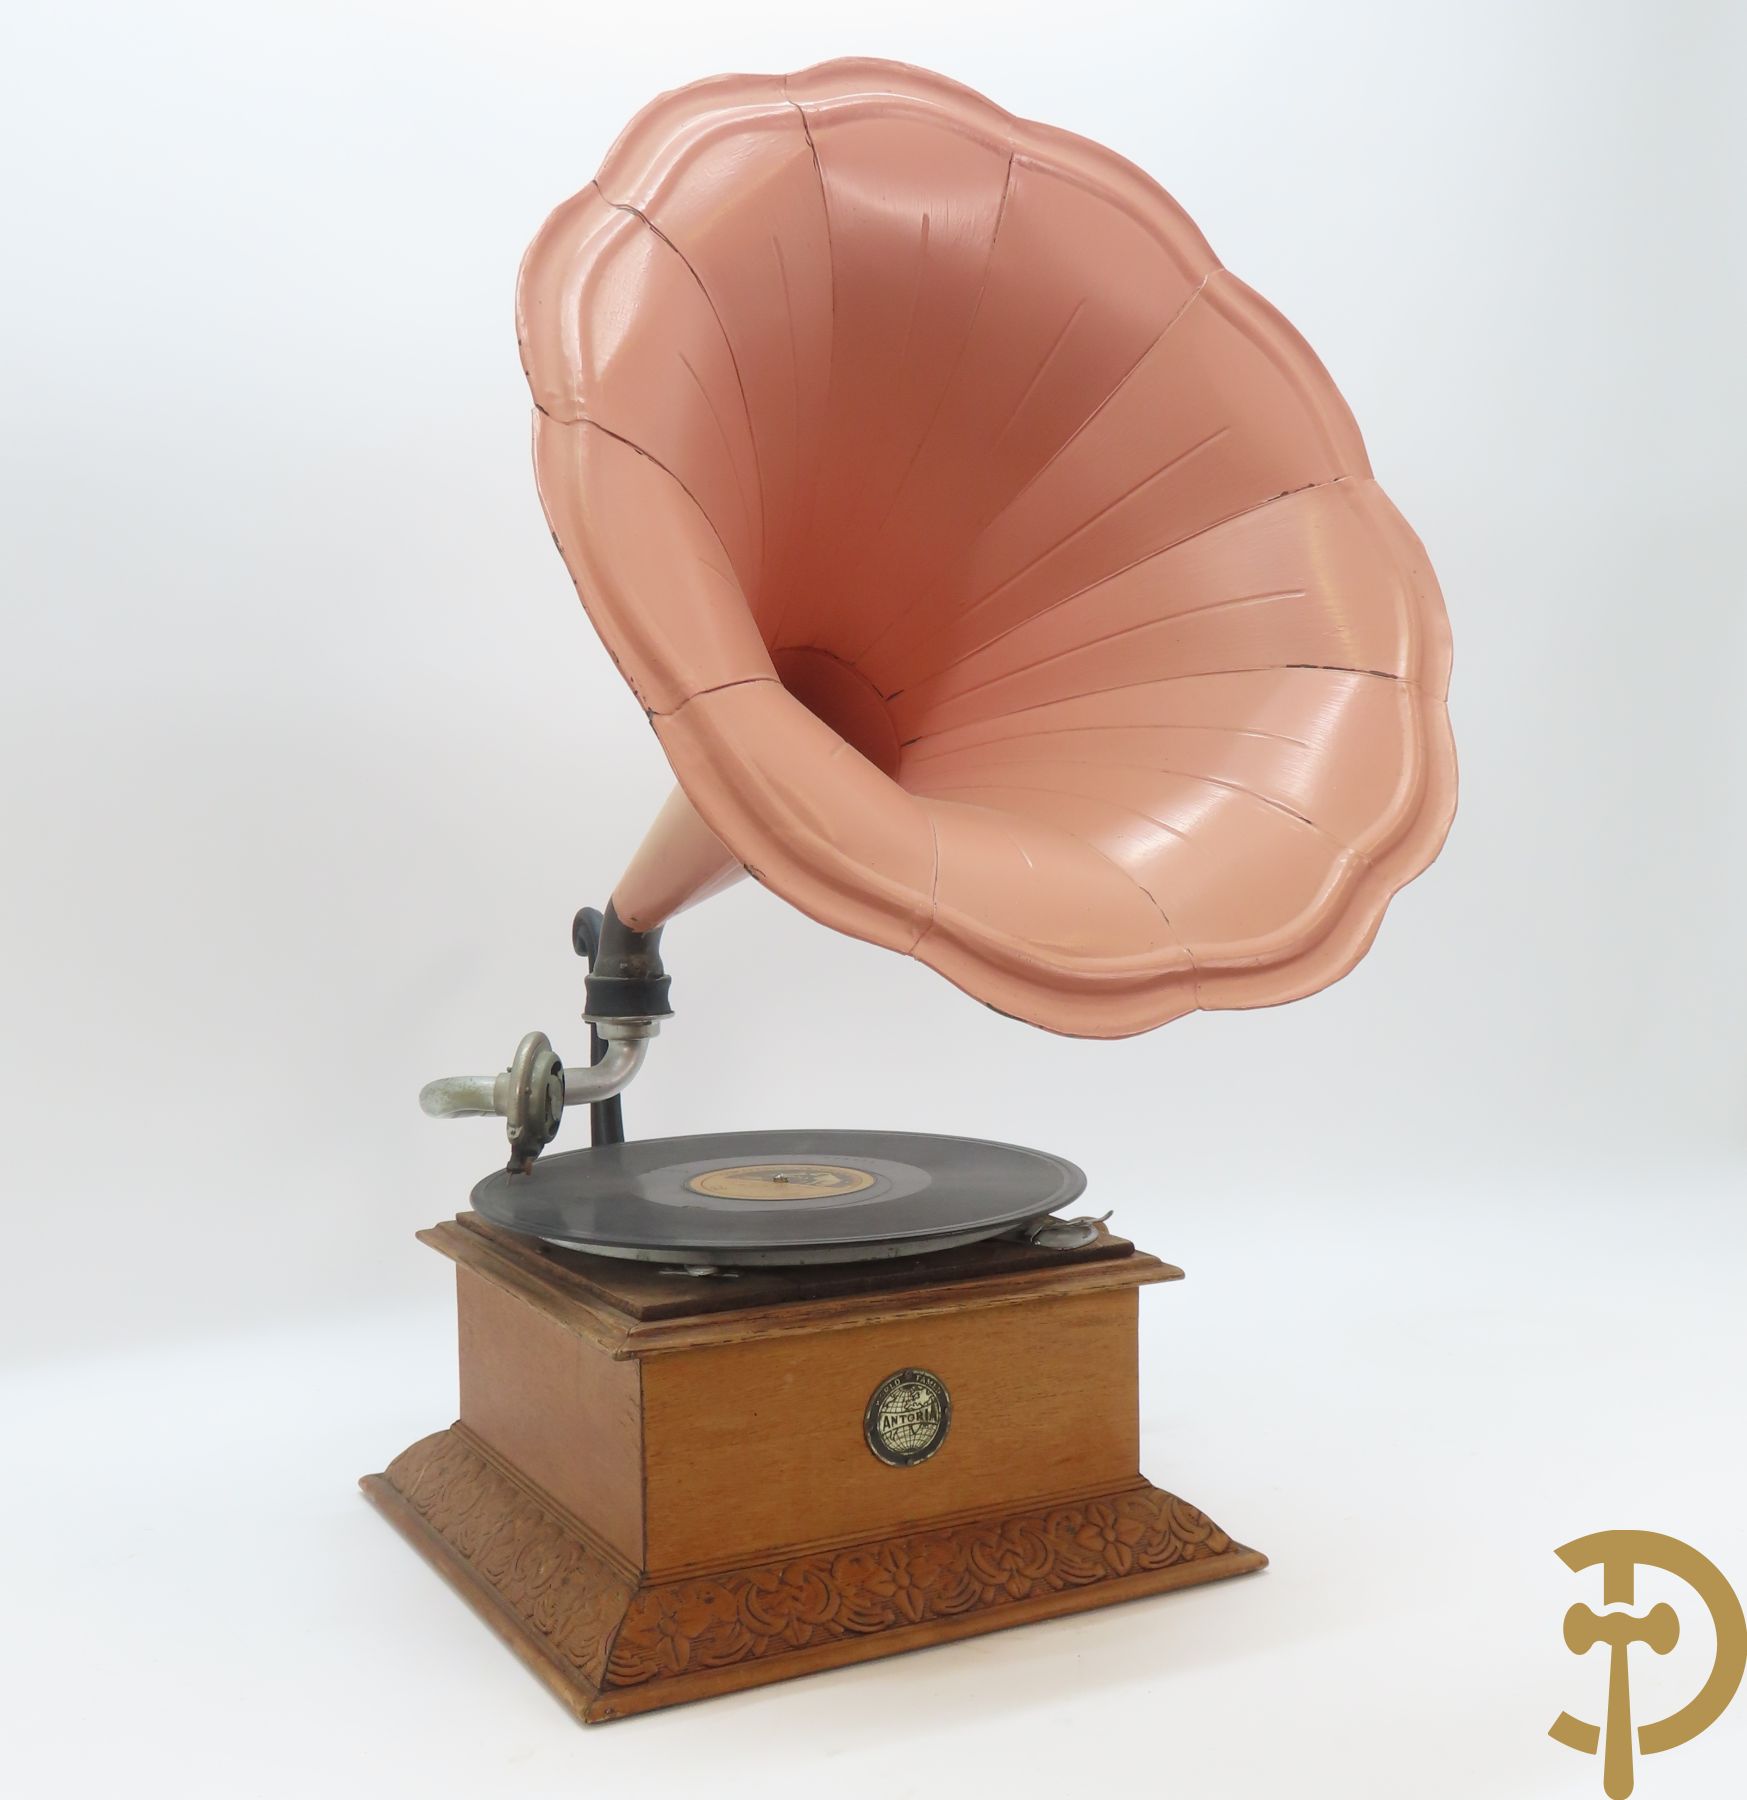 Oude grammofoon met beschilderde roze hoorn, Antoria